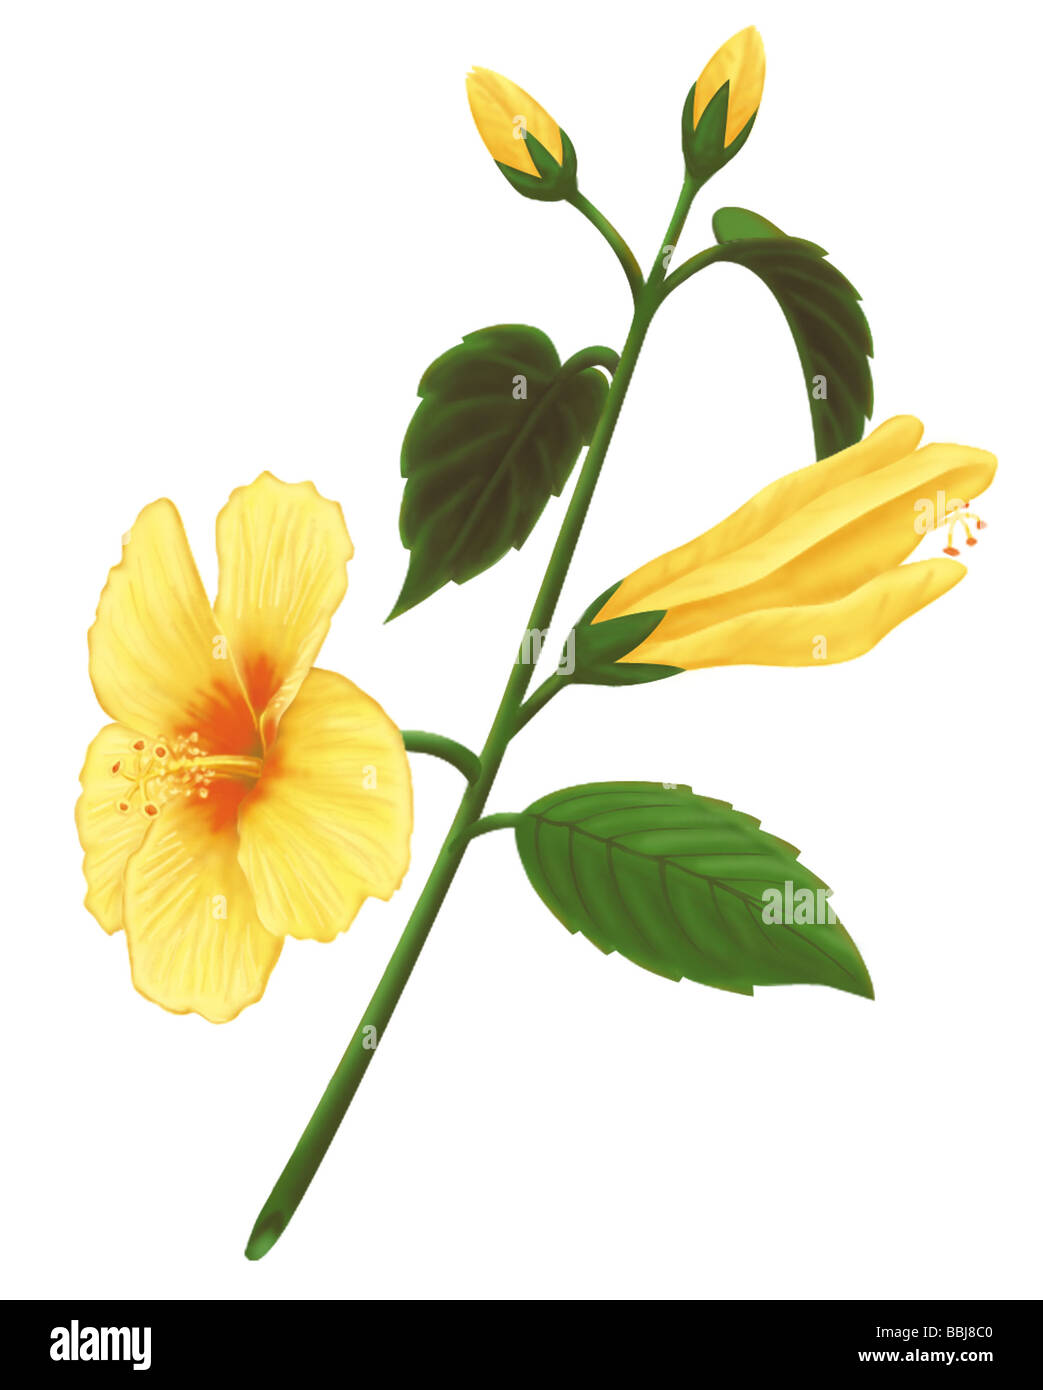 Dibujo de un amarillo hibiscus, la flor del estado de Hawaii. Foto de stock